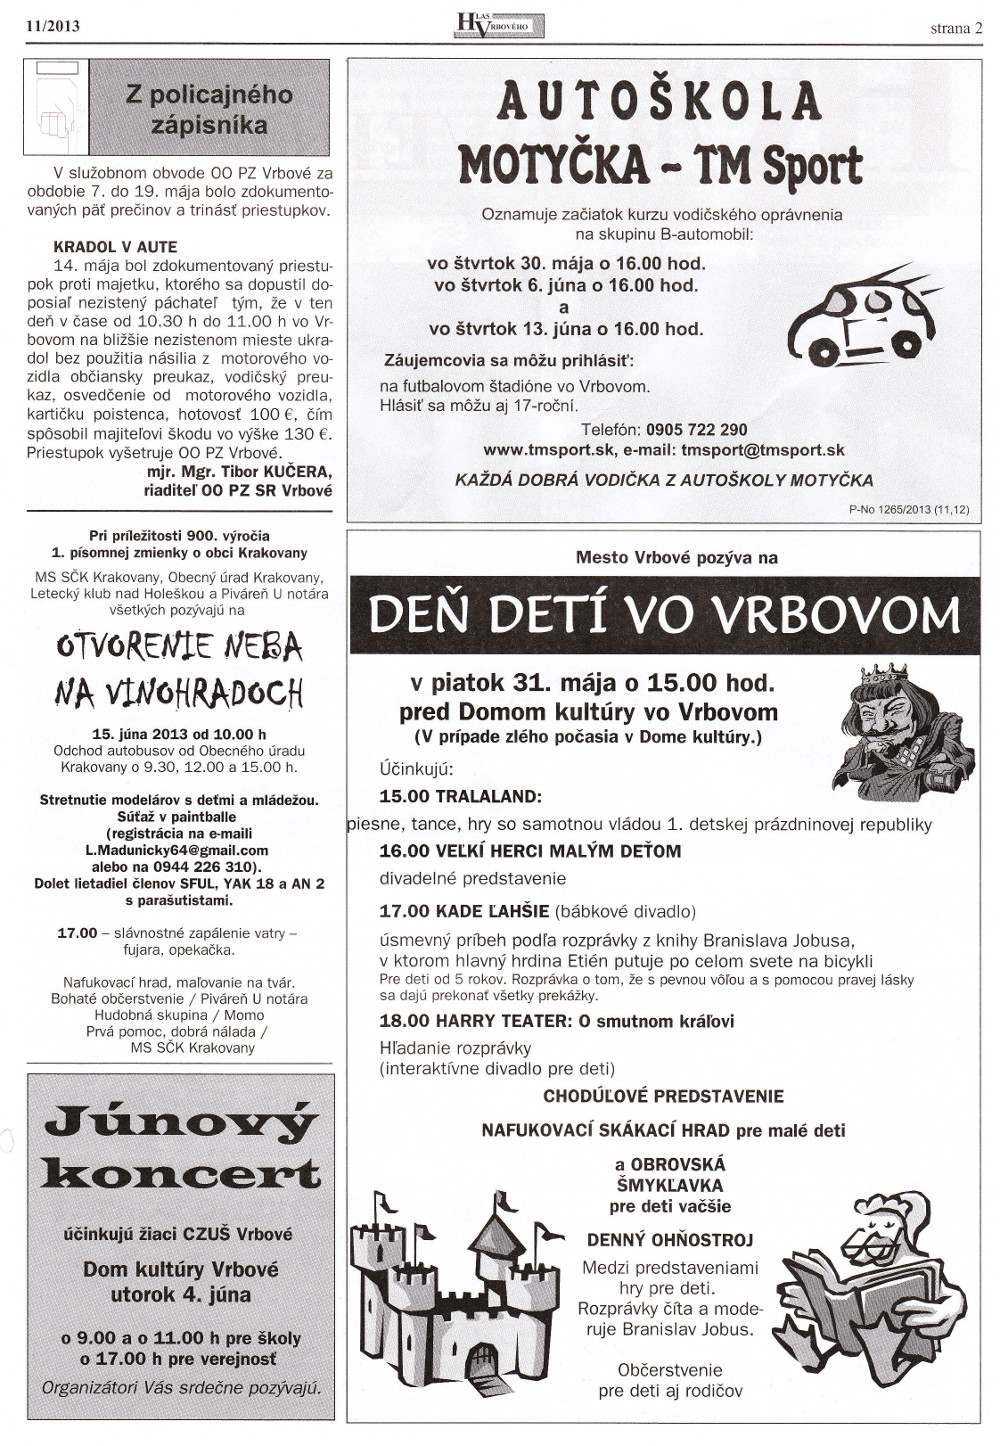 Hlas Vrbového 11/2013, strana 2